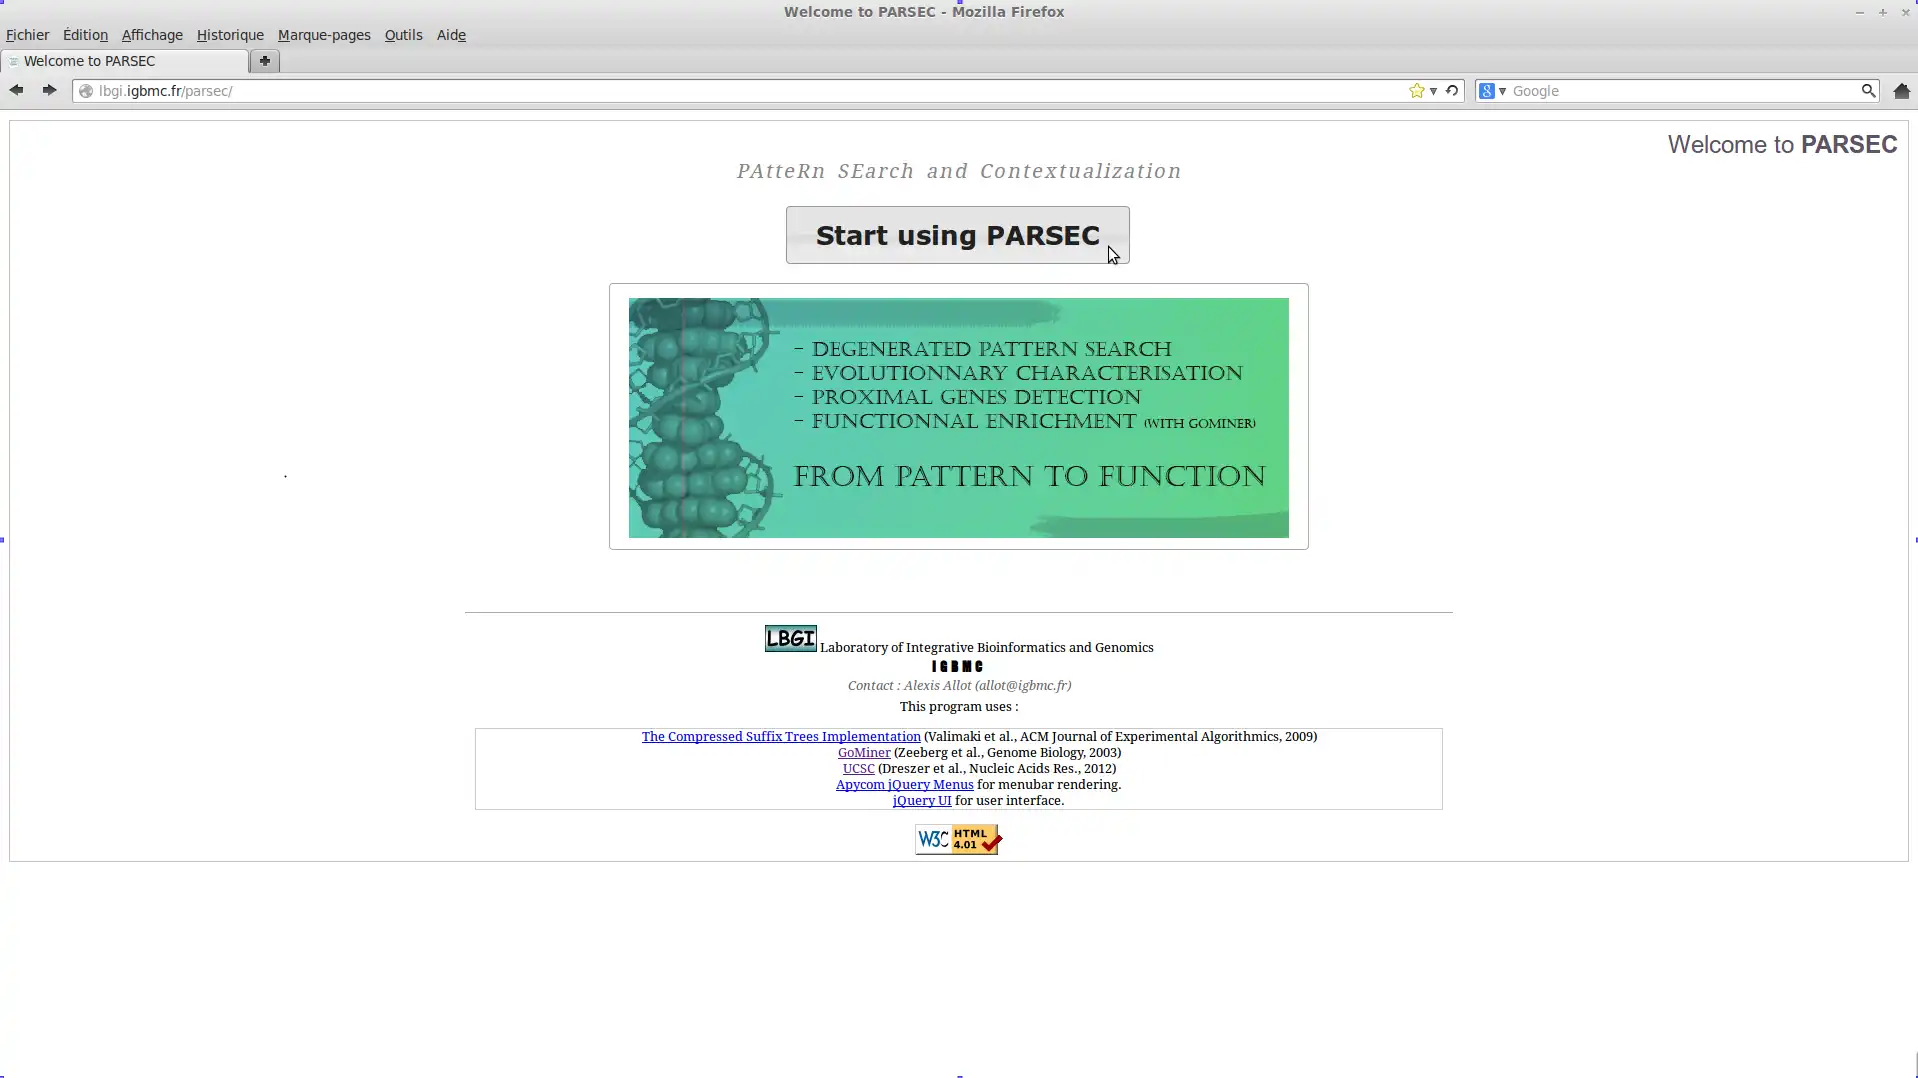 下载 Web 工具或 Web 应用程序 PARSEC - PAtteRn SEarch / Context 以通过 Linux 在线在 Windows 中在线运行